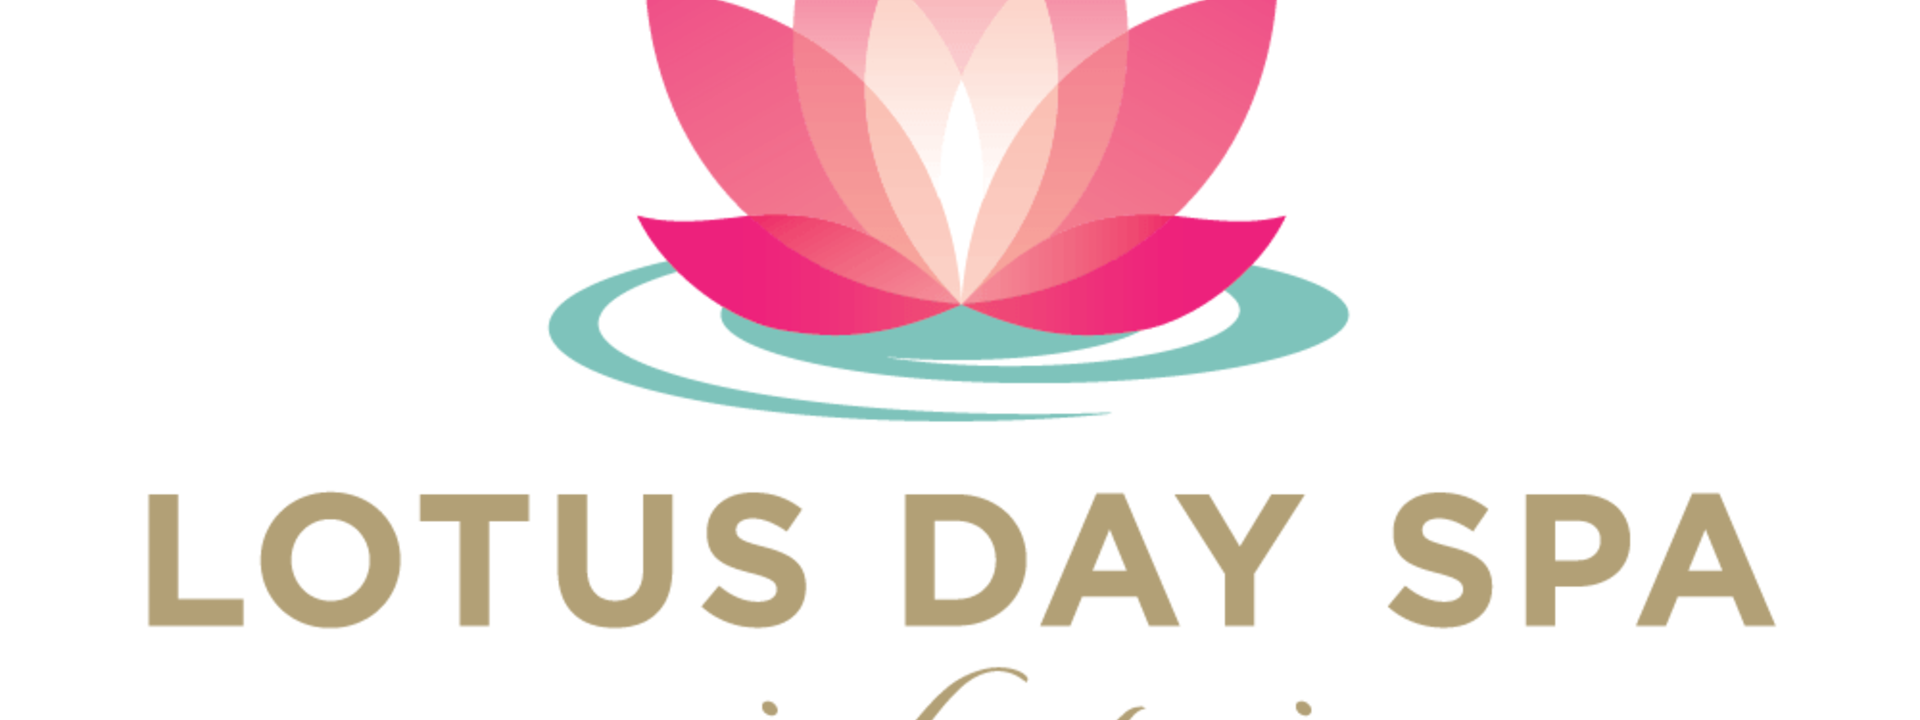 lotus-day-spa-logo.png